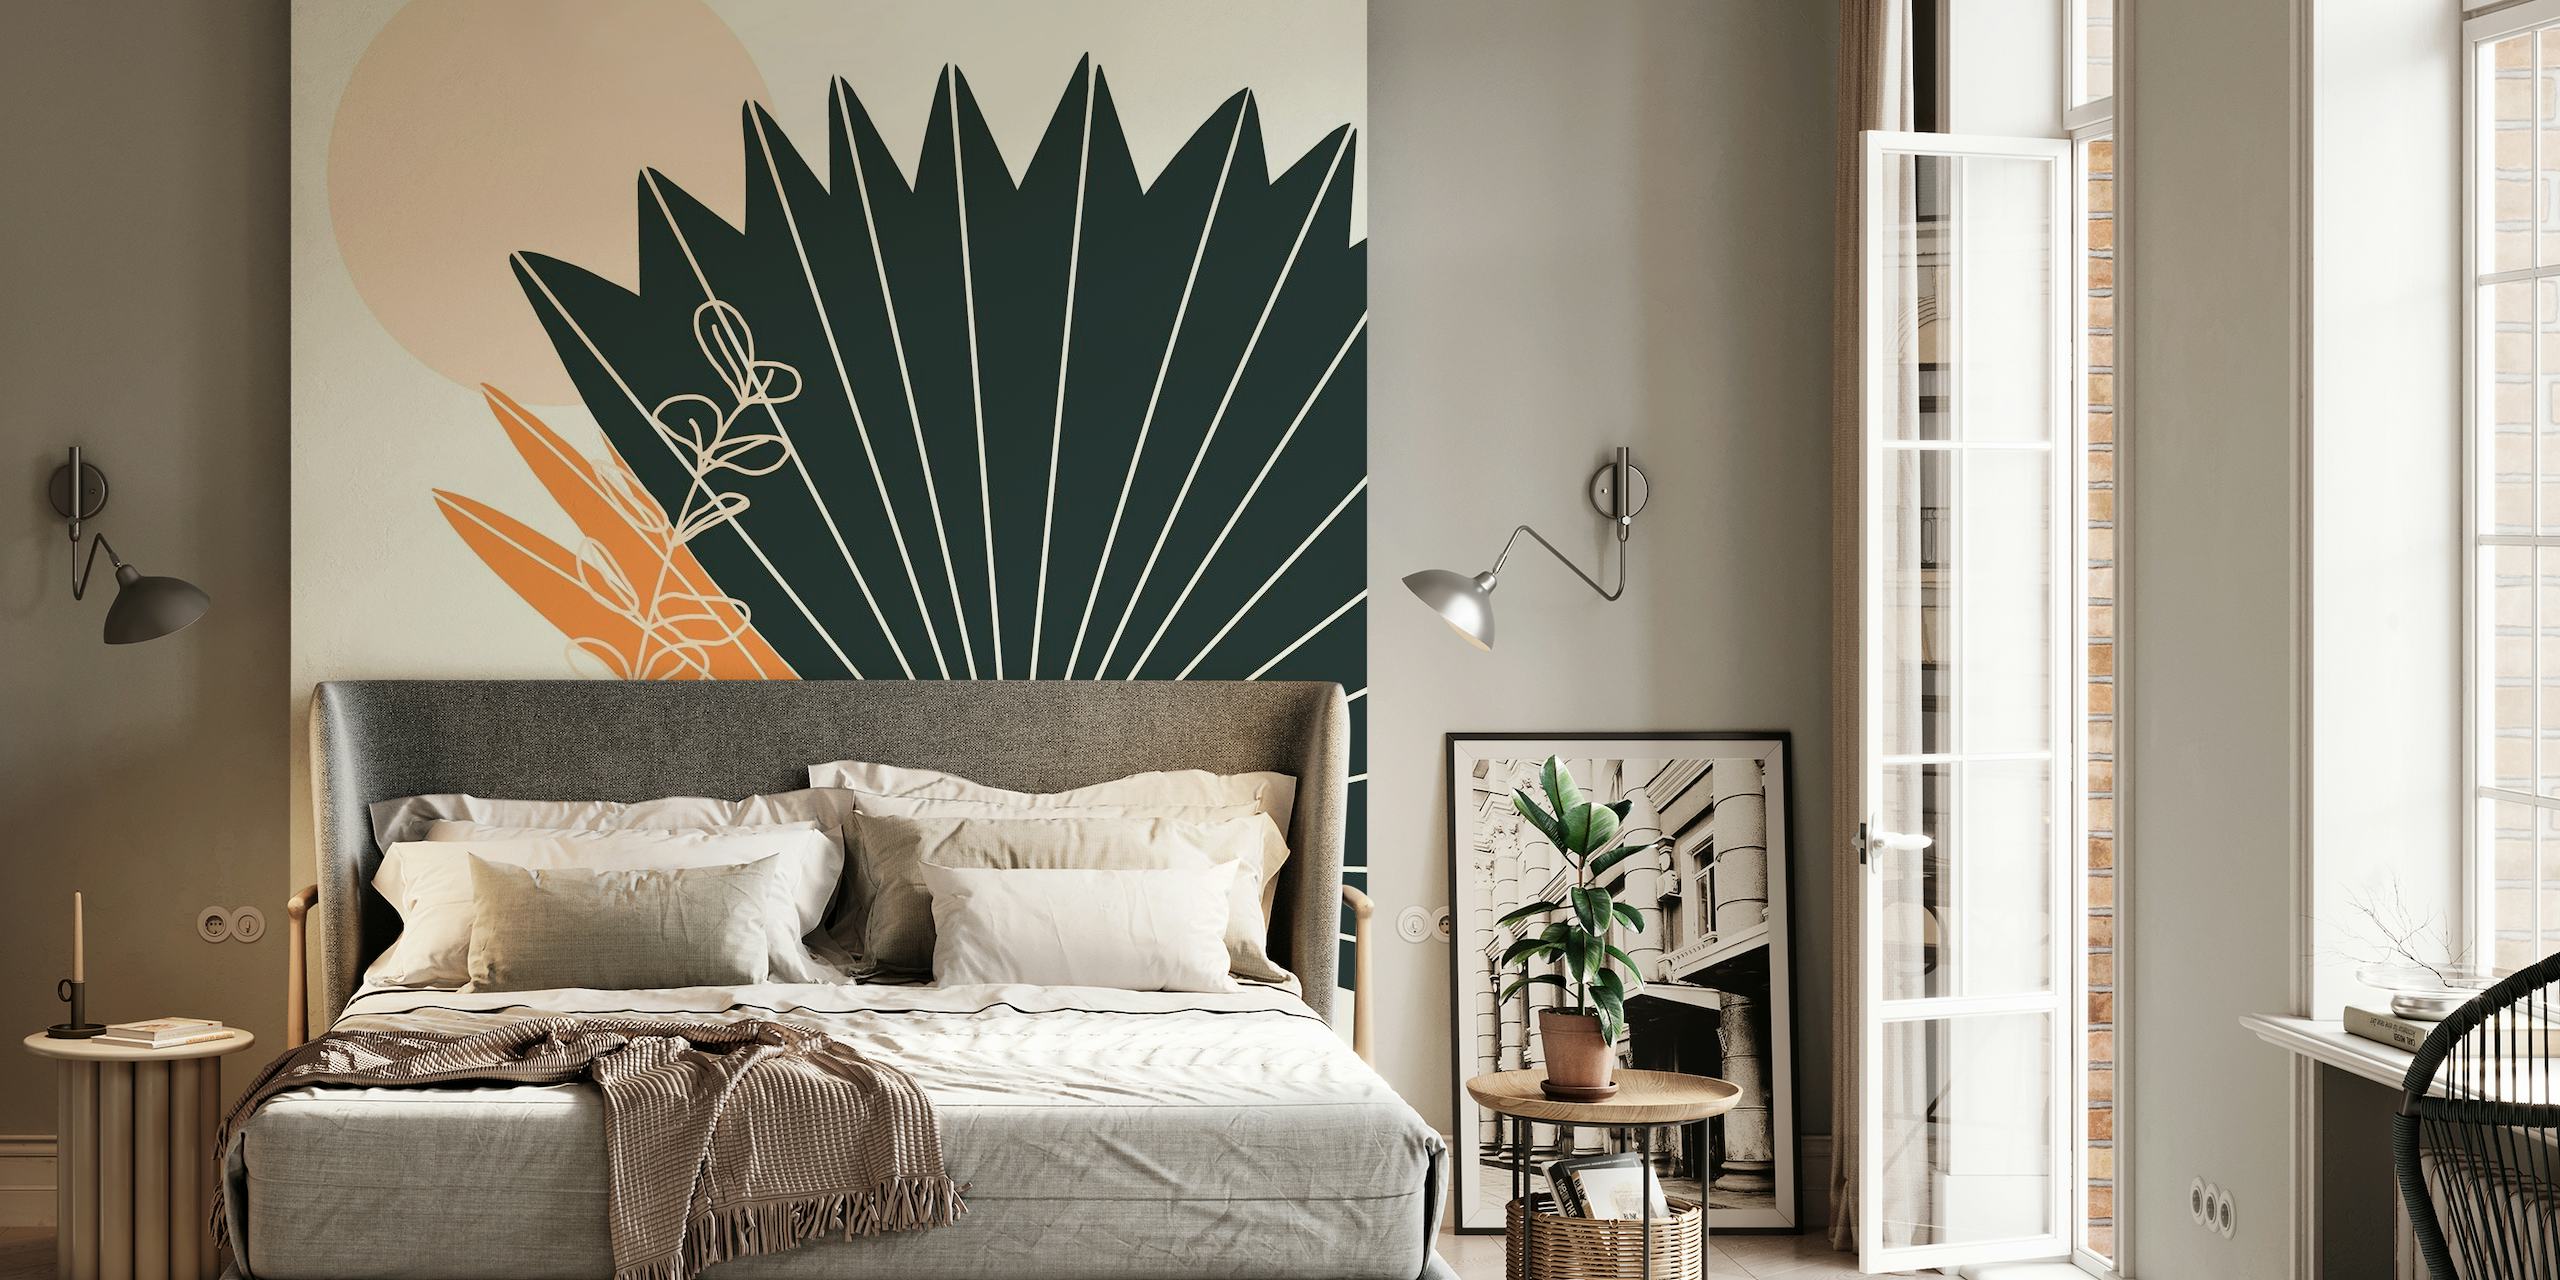 Abstract fotobehang met gestileerde palmbladeren en ambachtelijke vaas in aardetinten